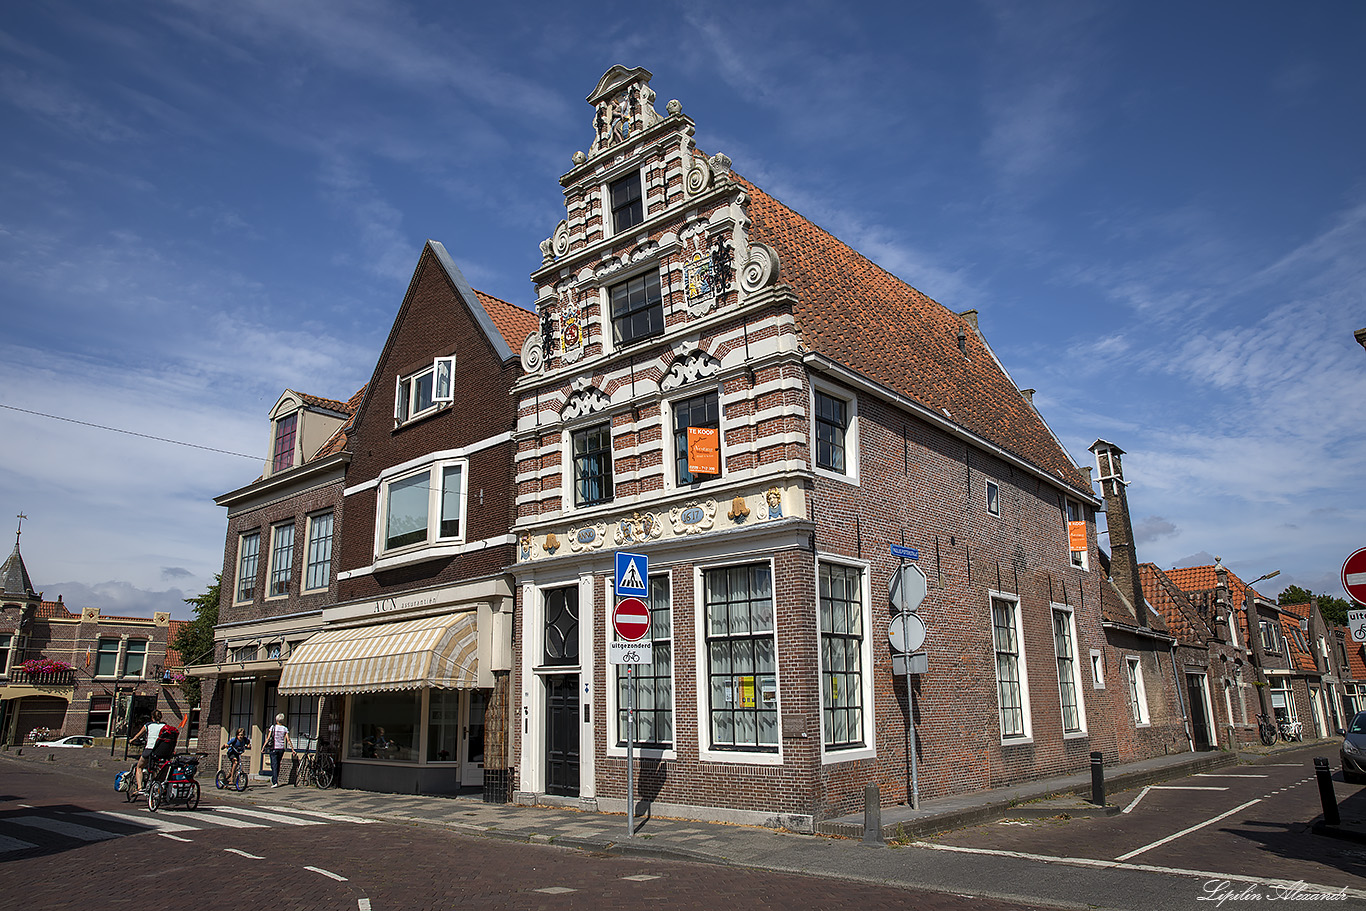 Энкхёйзен (Enkhuizen) - Нидерланды (Nederland)